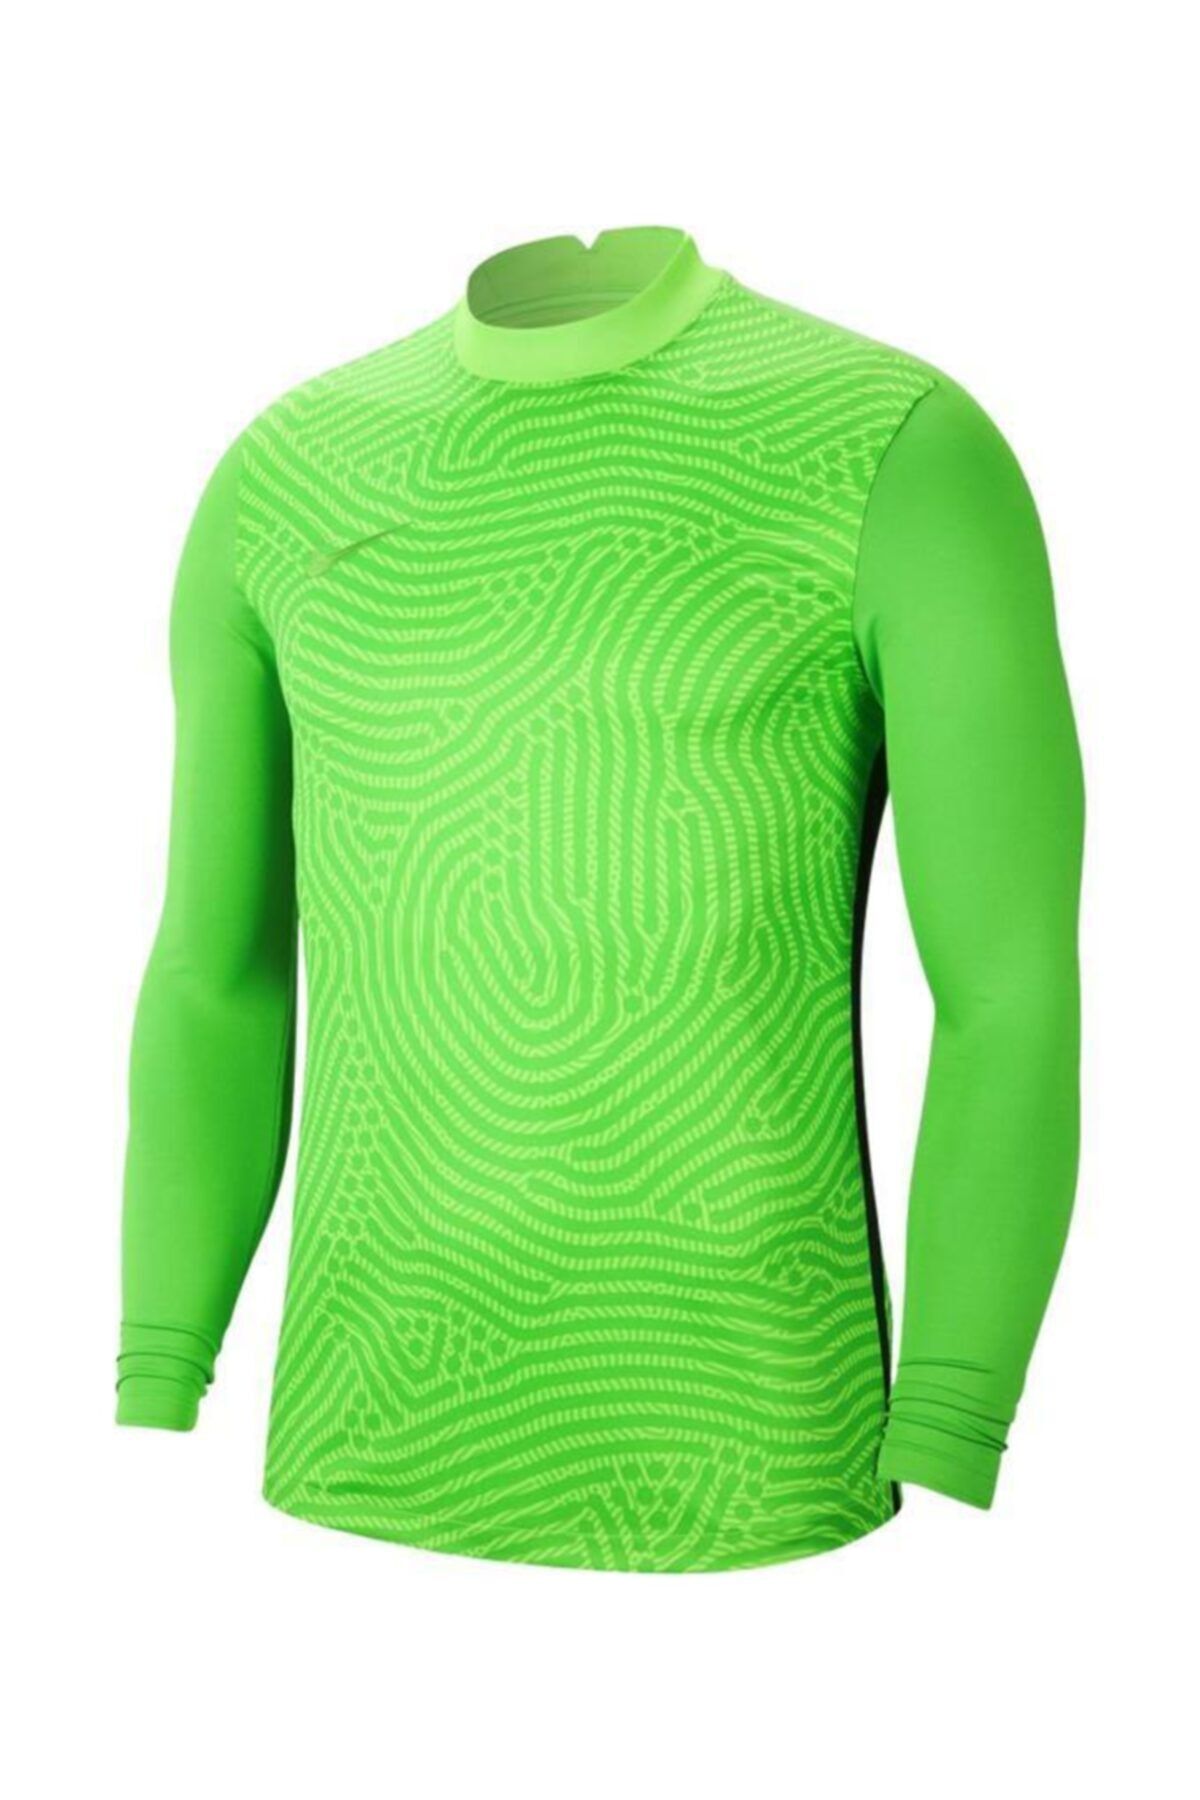 Nike Erkek Yeşil Kaleci Forma Bv6711-398